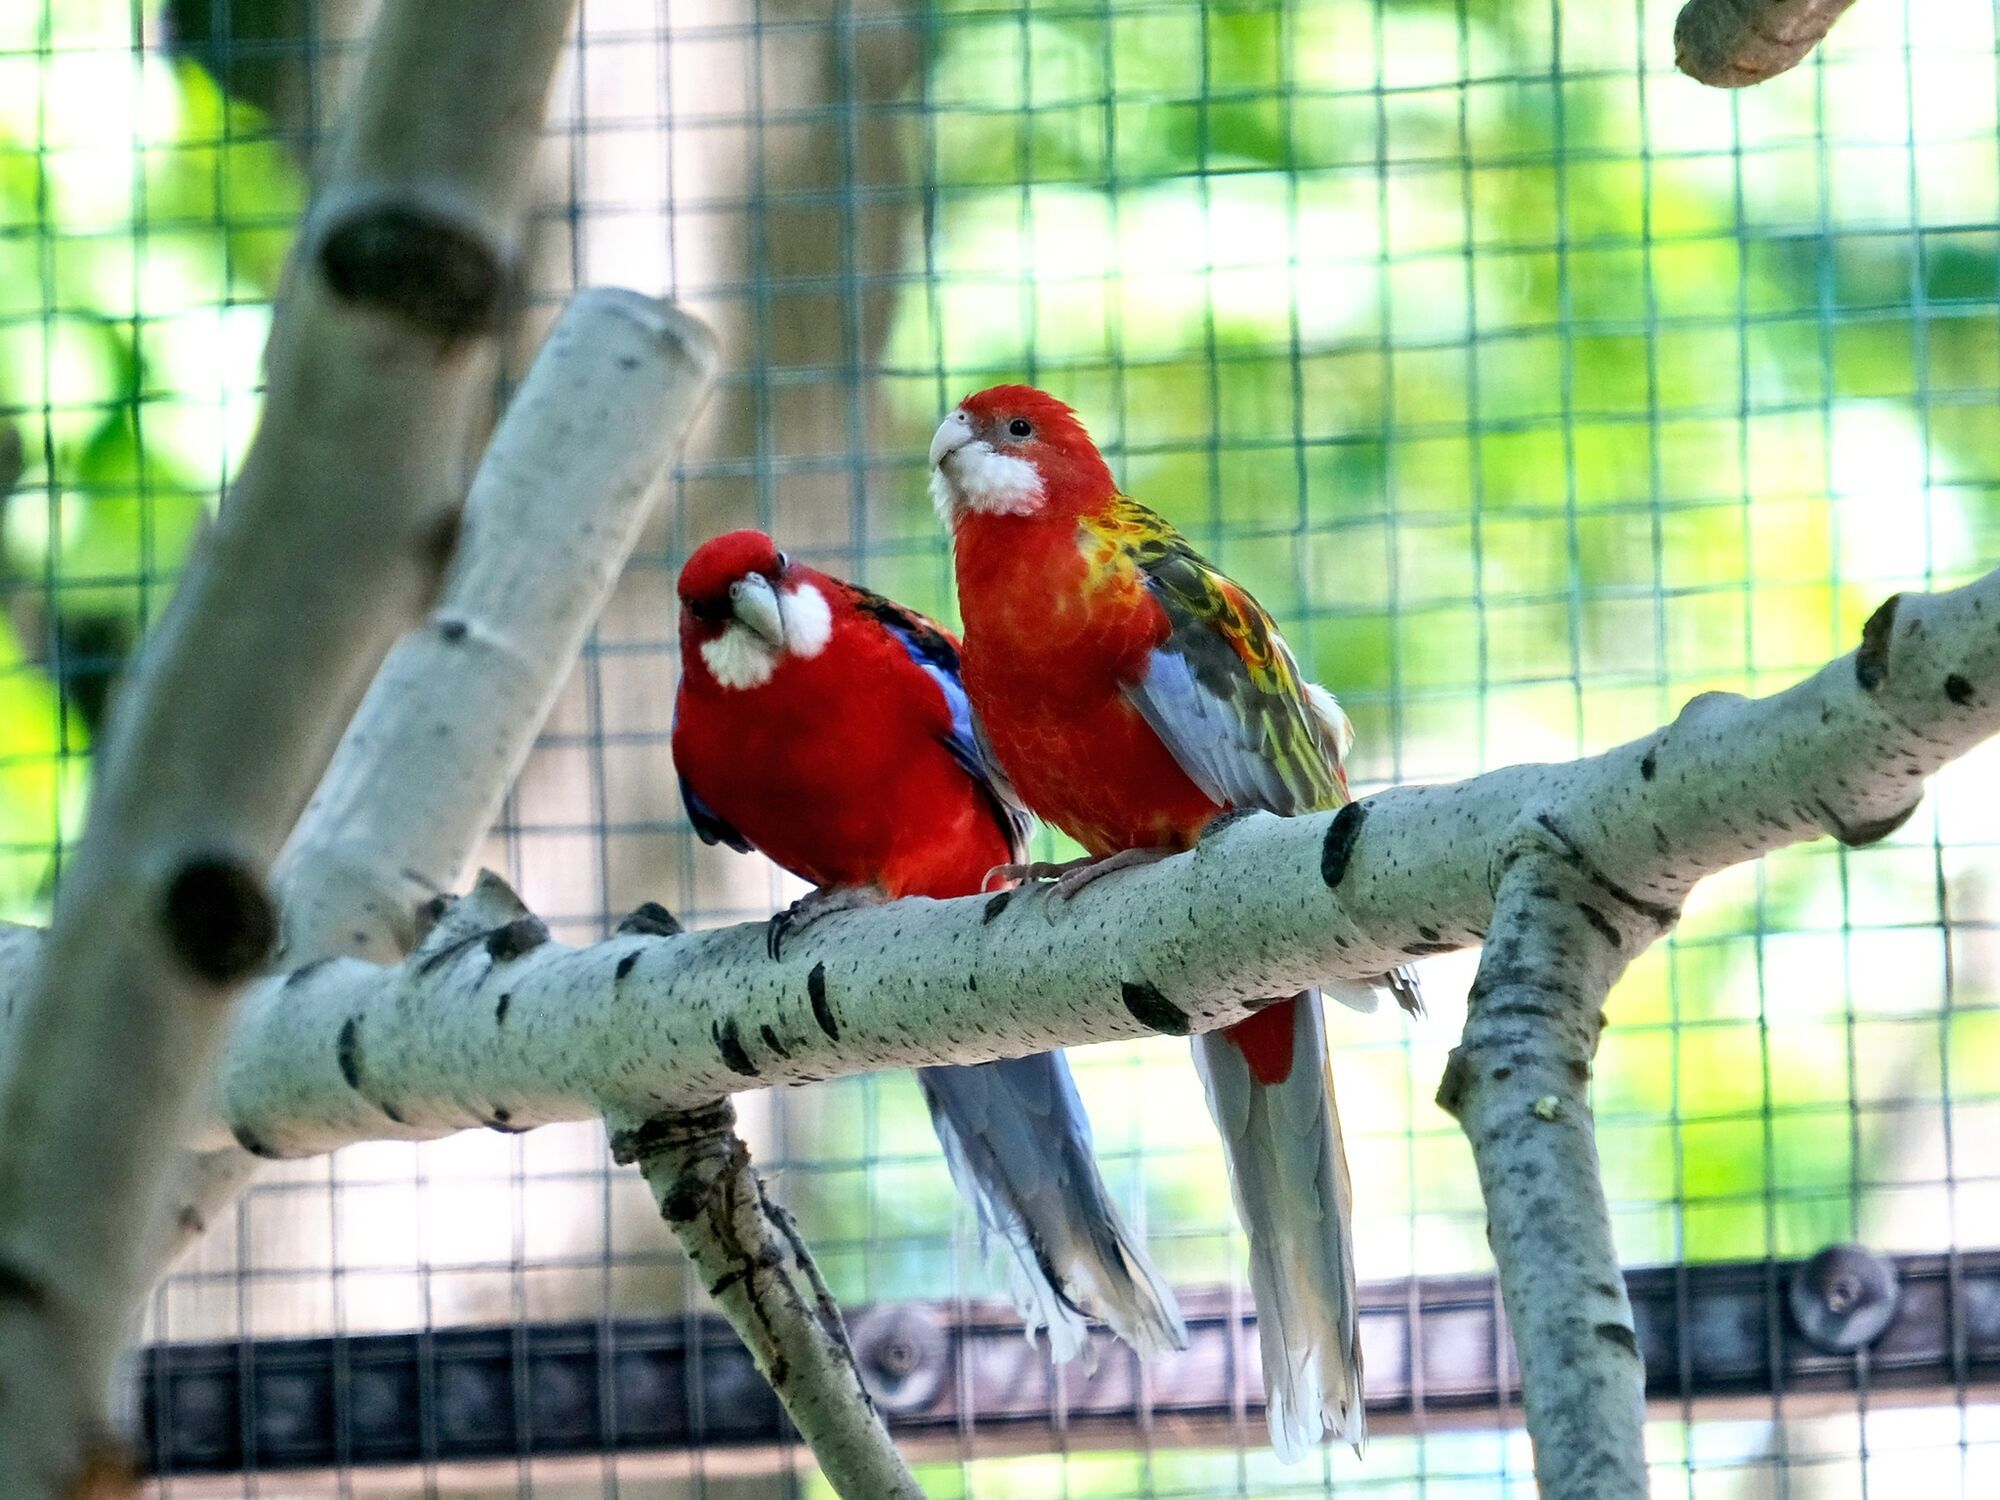 Бассейн-фонтан и канатные дорожки: в Киевском зоопарке для спасенных попугаев создали новый вольер. Фото и видео